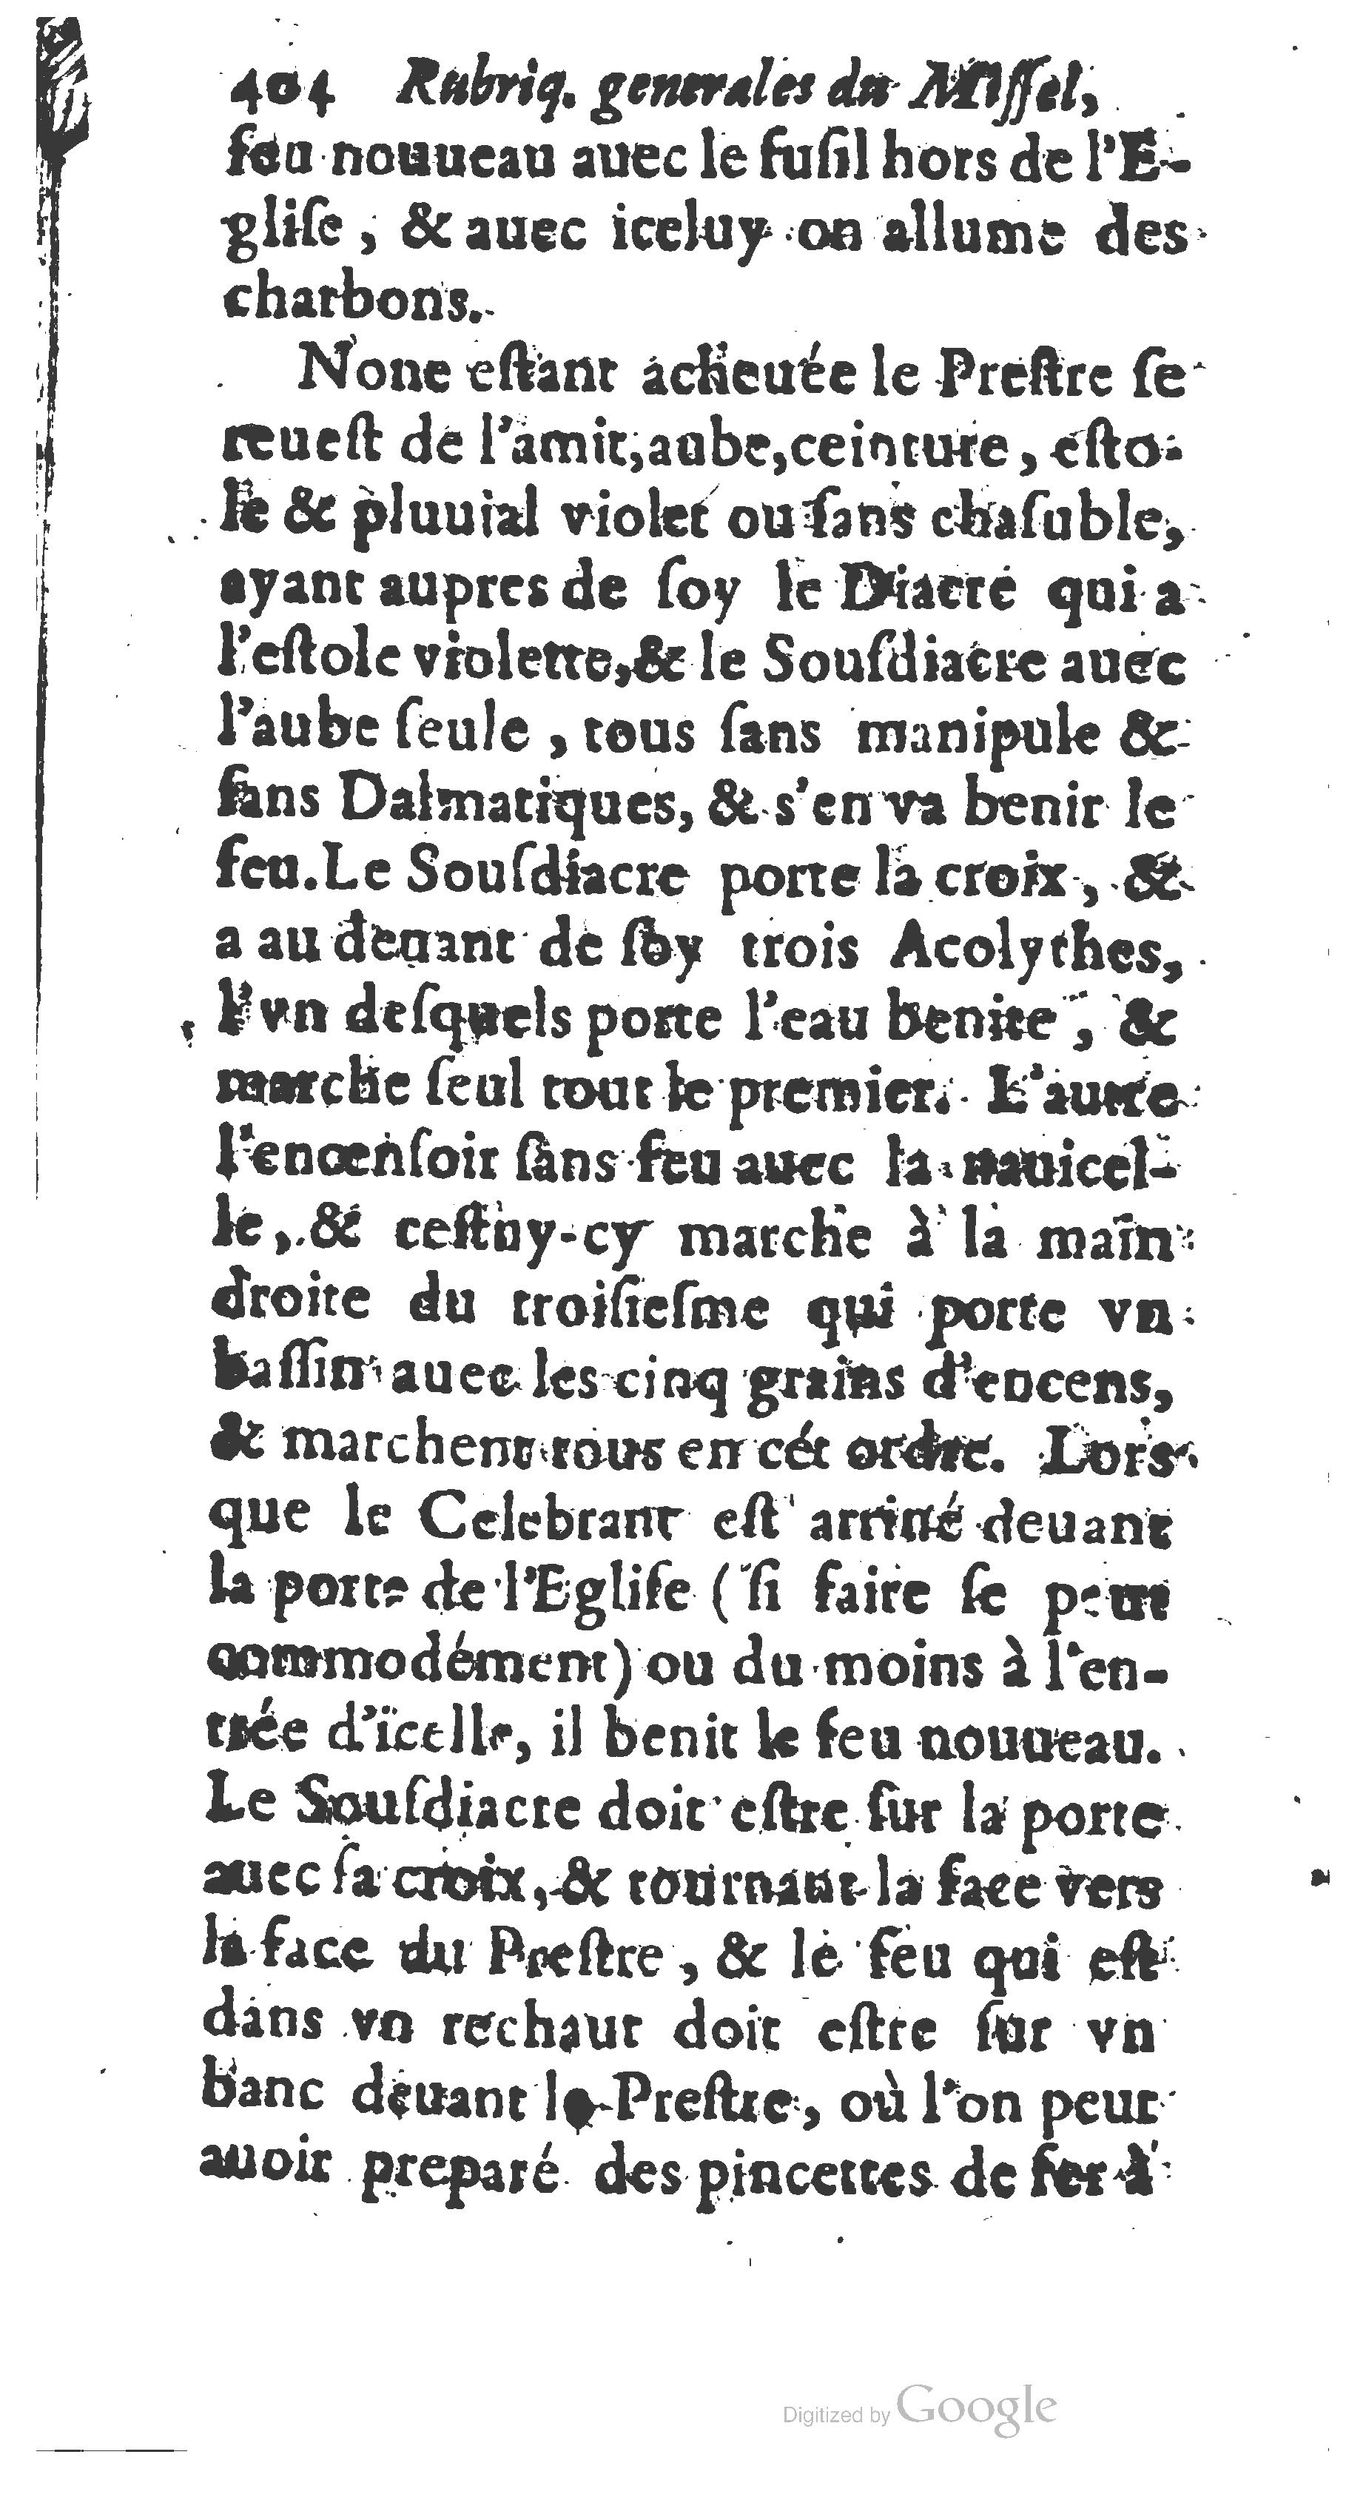 1651 Abrégé du trésor des cérémonies ecclésiastiques Guillermet_BM Lyon_Page_423.jpg